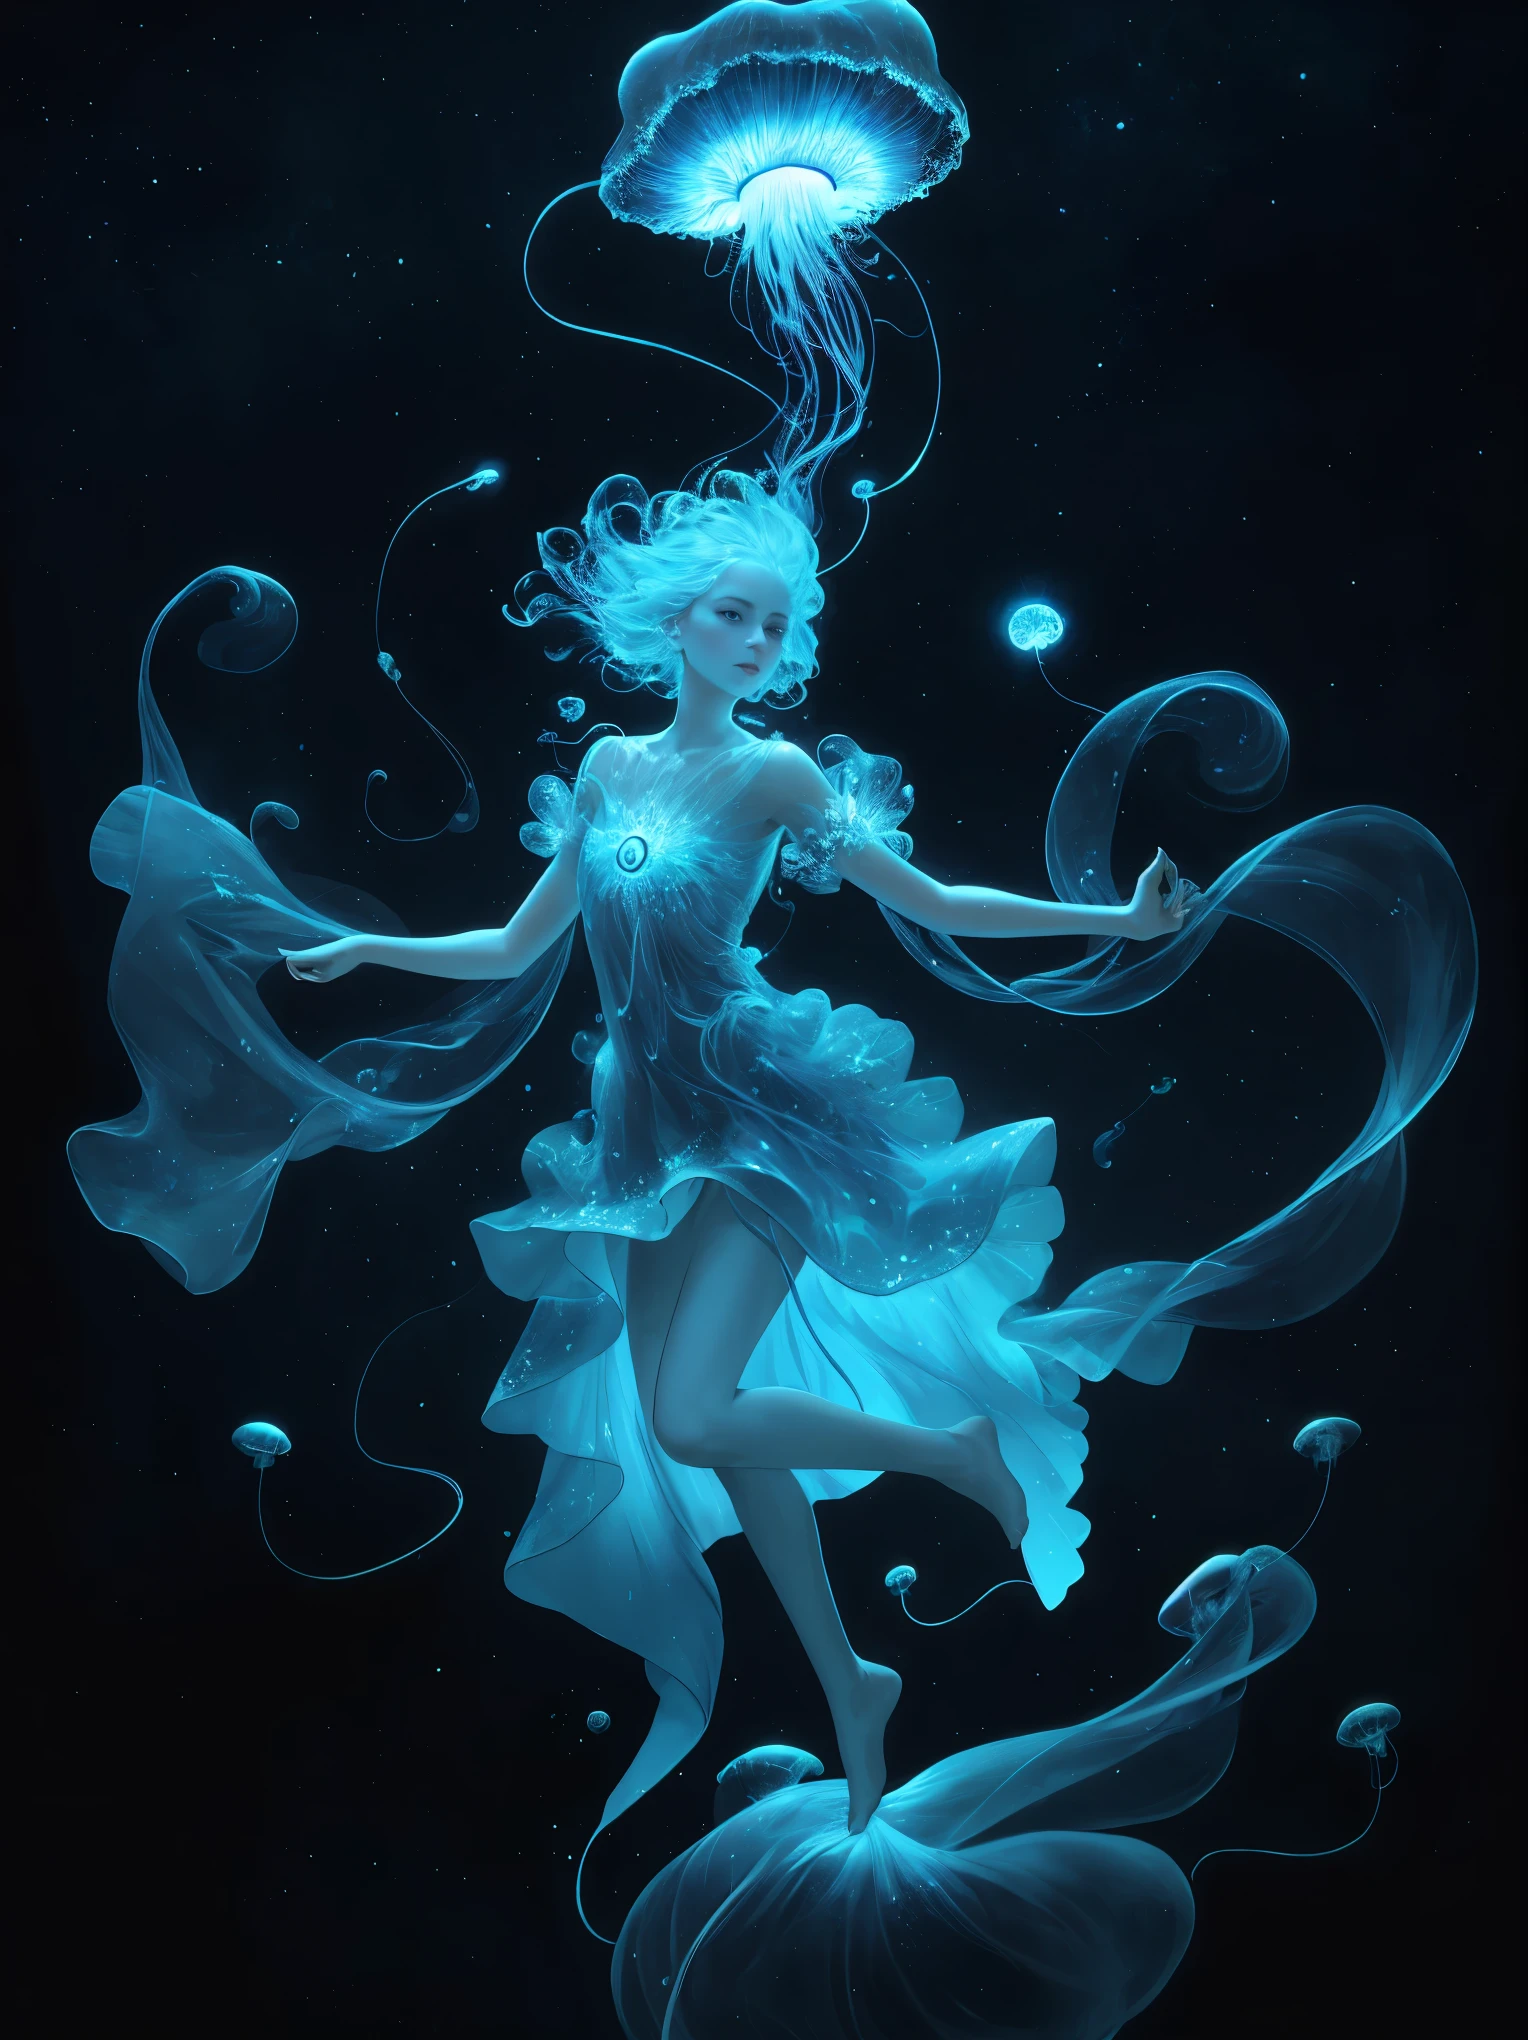 Eine himmlische Qualle, im Kosmos schwebend mit biolumineszierenden Ranken, die einen kosmischen Tanz erzeugen.